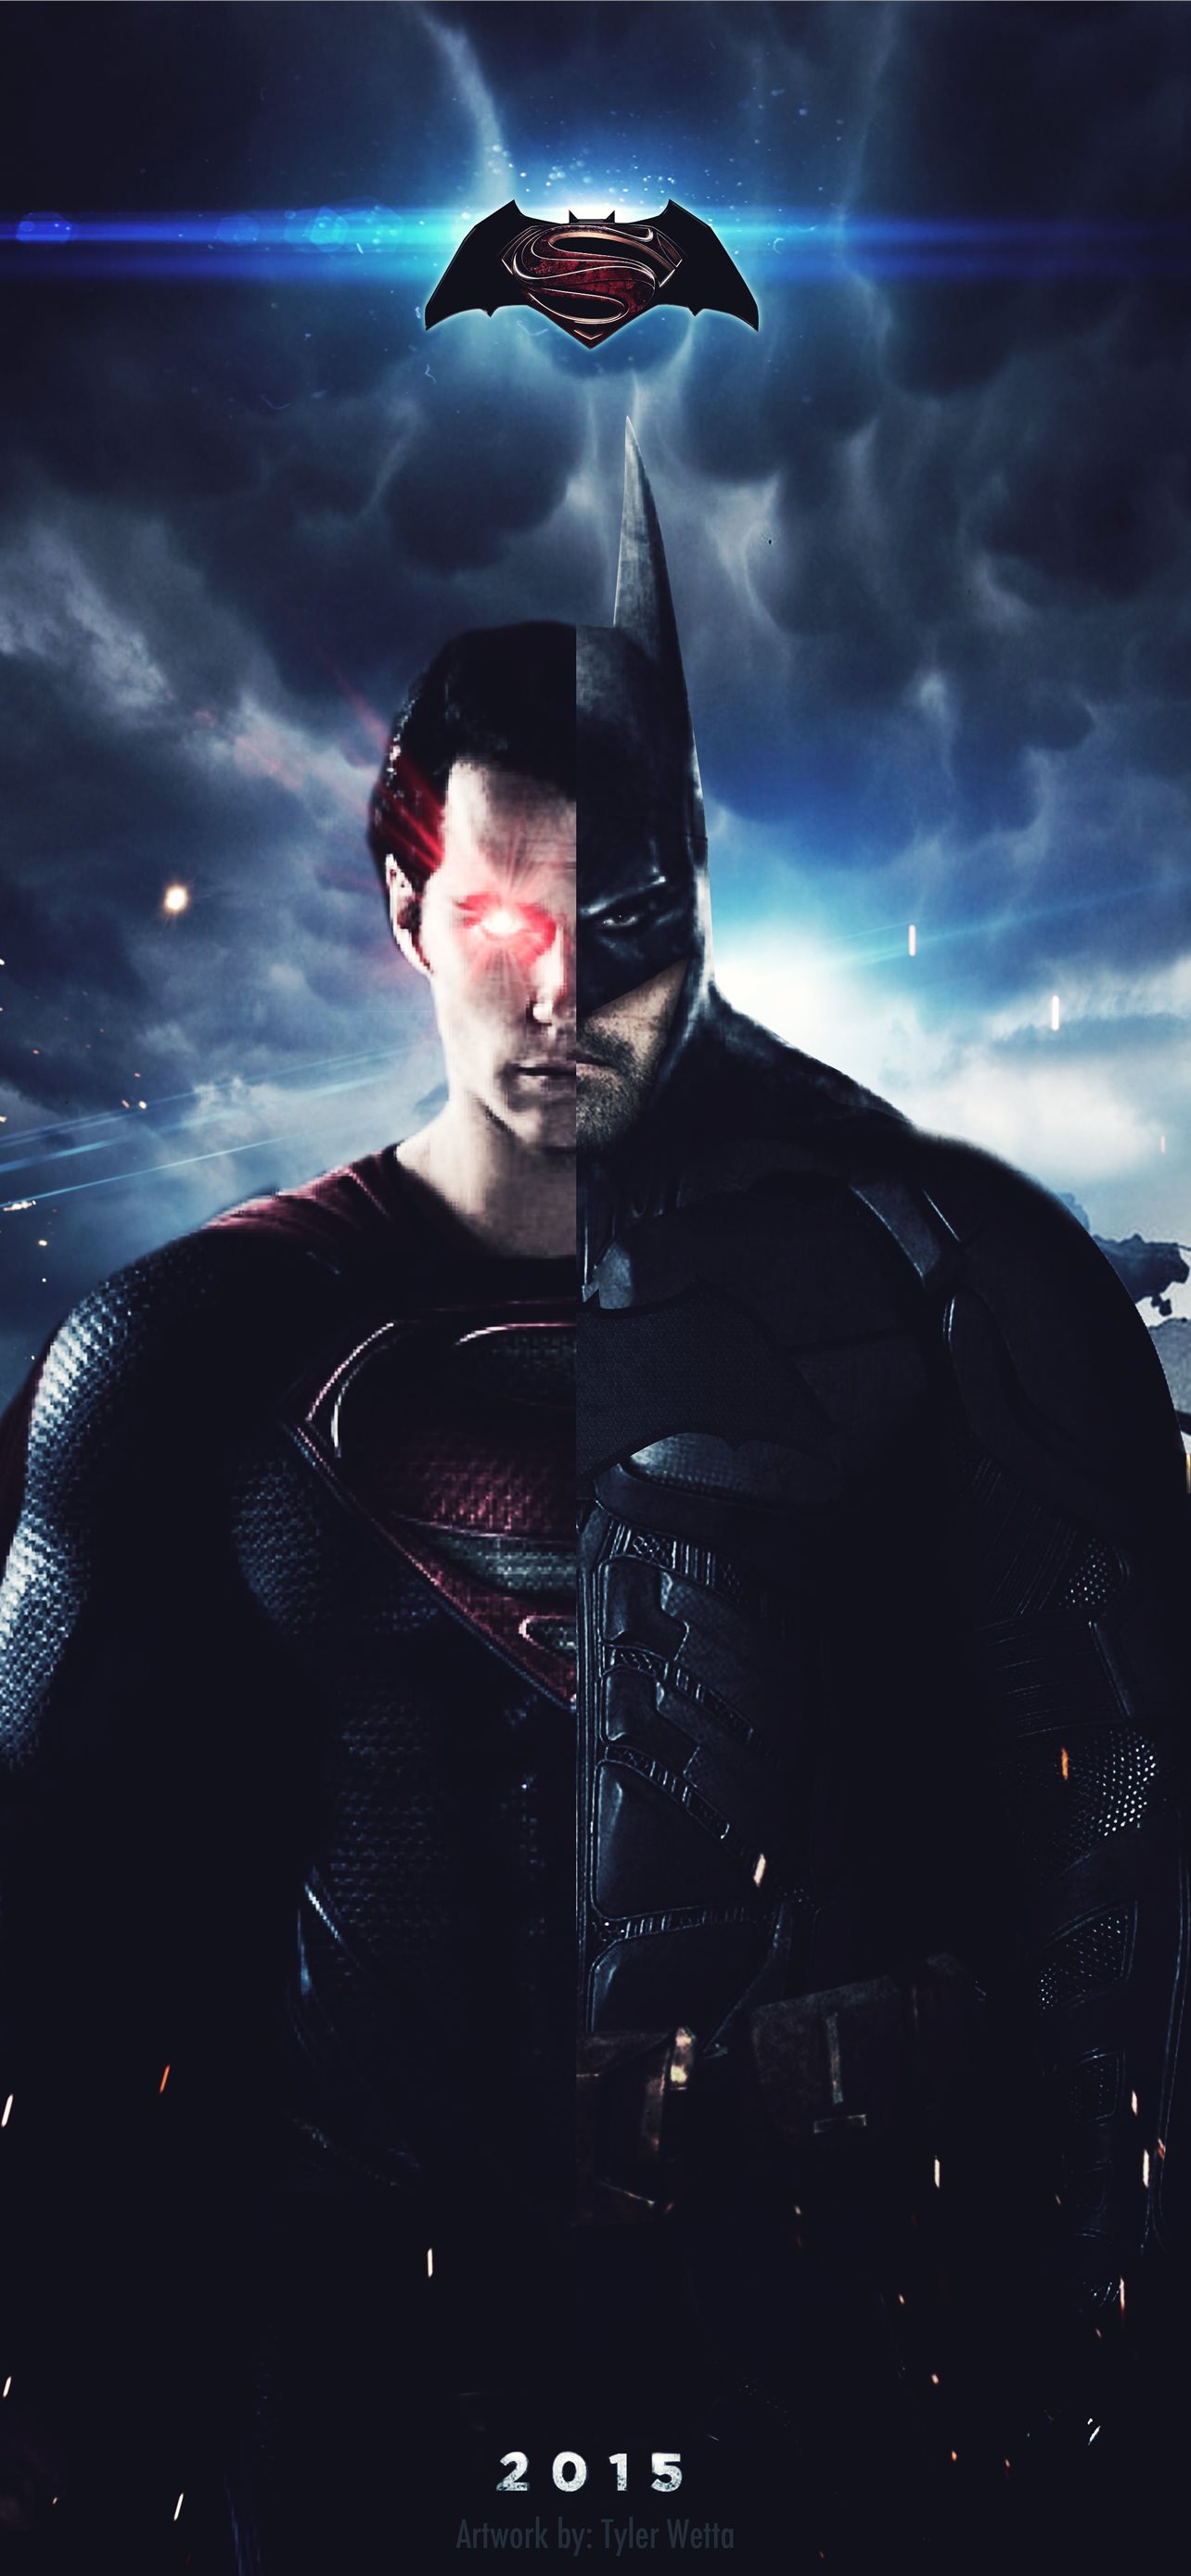 Batman VS Superman for iPhone 7 batman vs superman logo HD phone wallpaper   Pxfuel